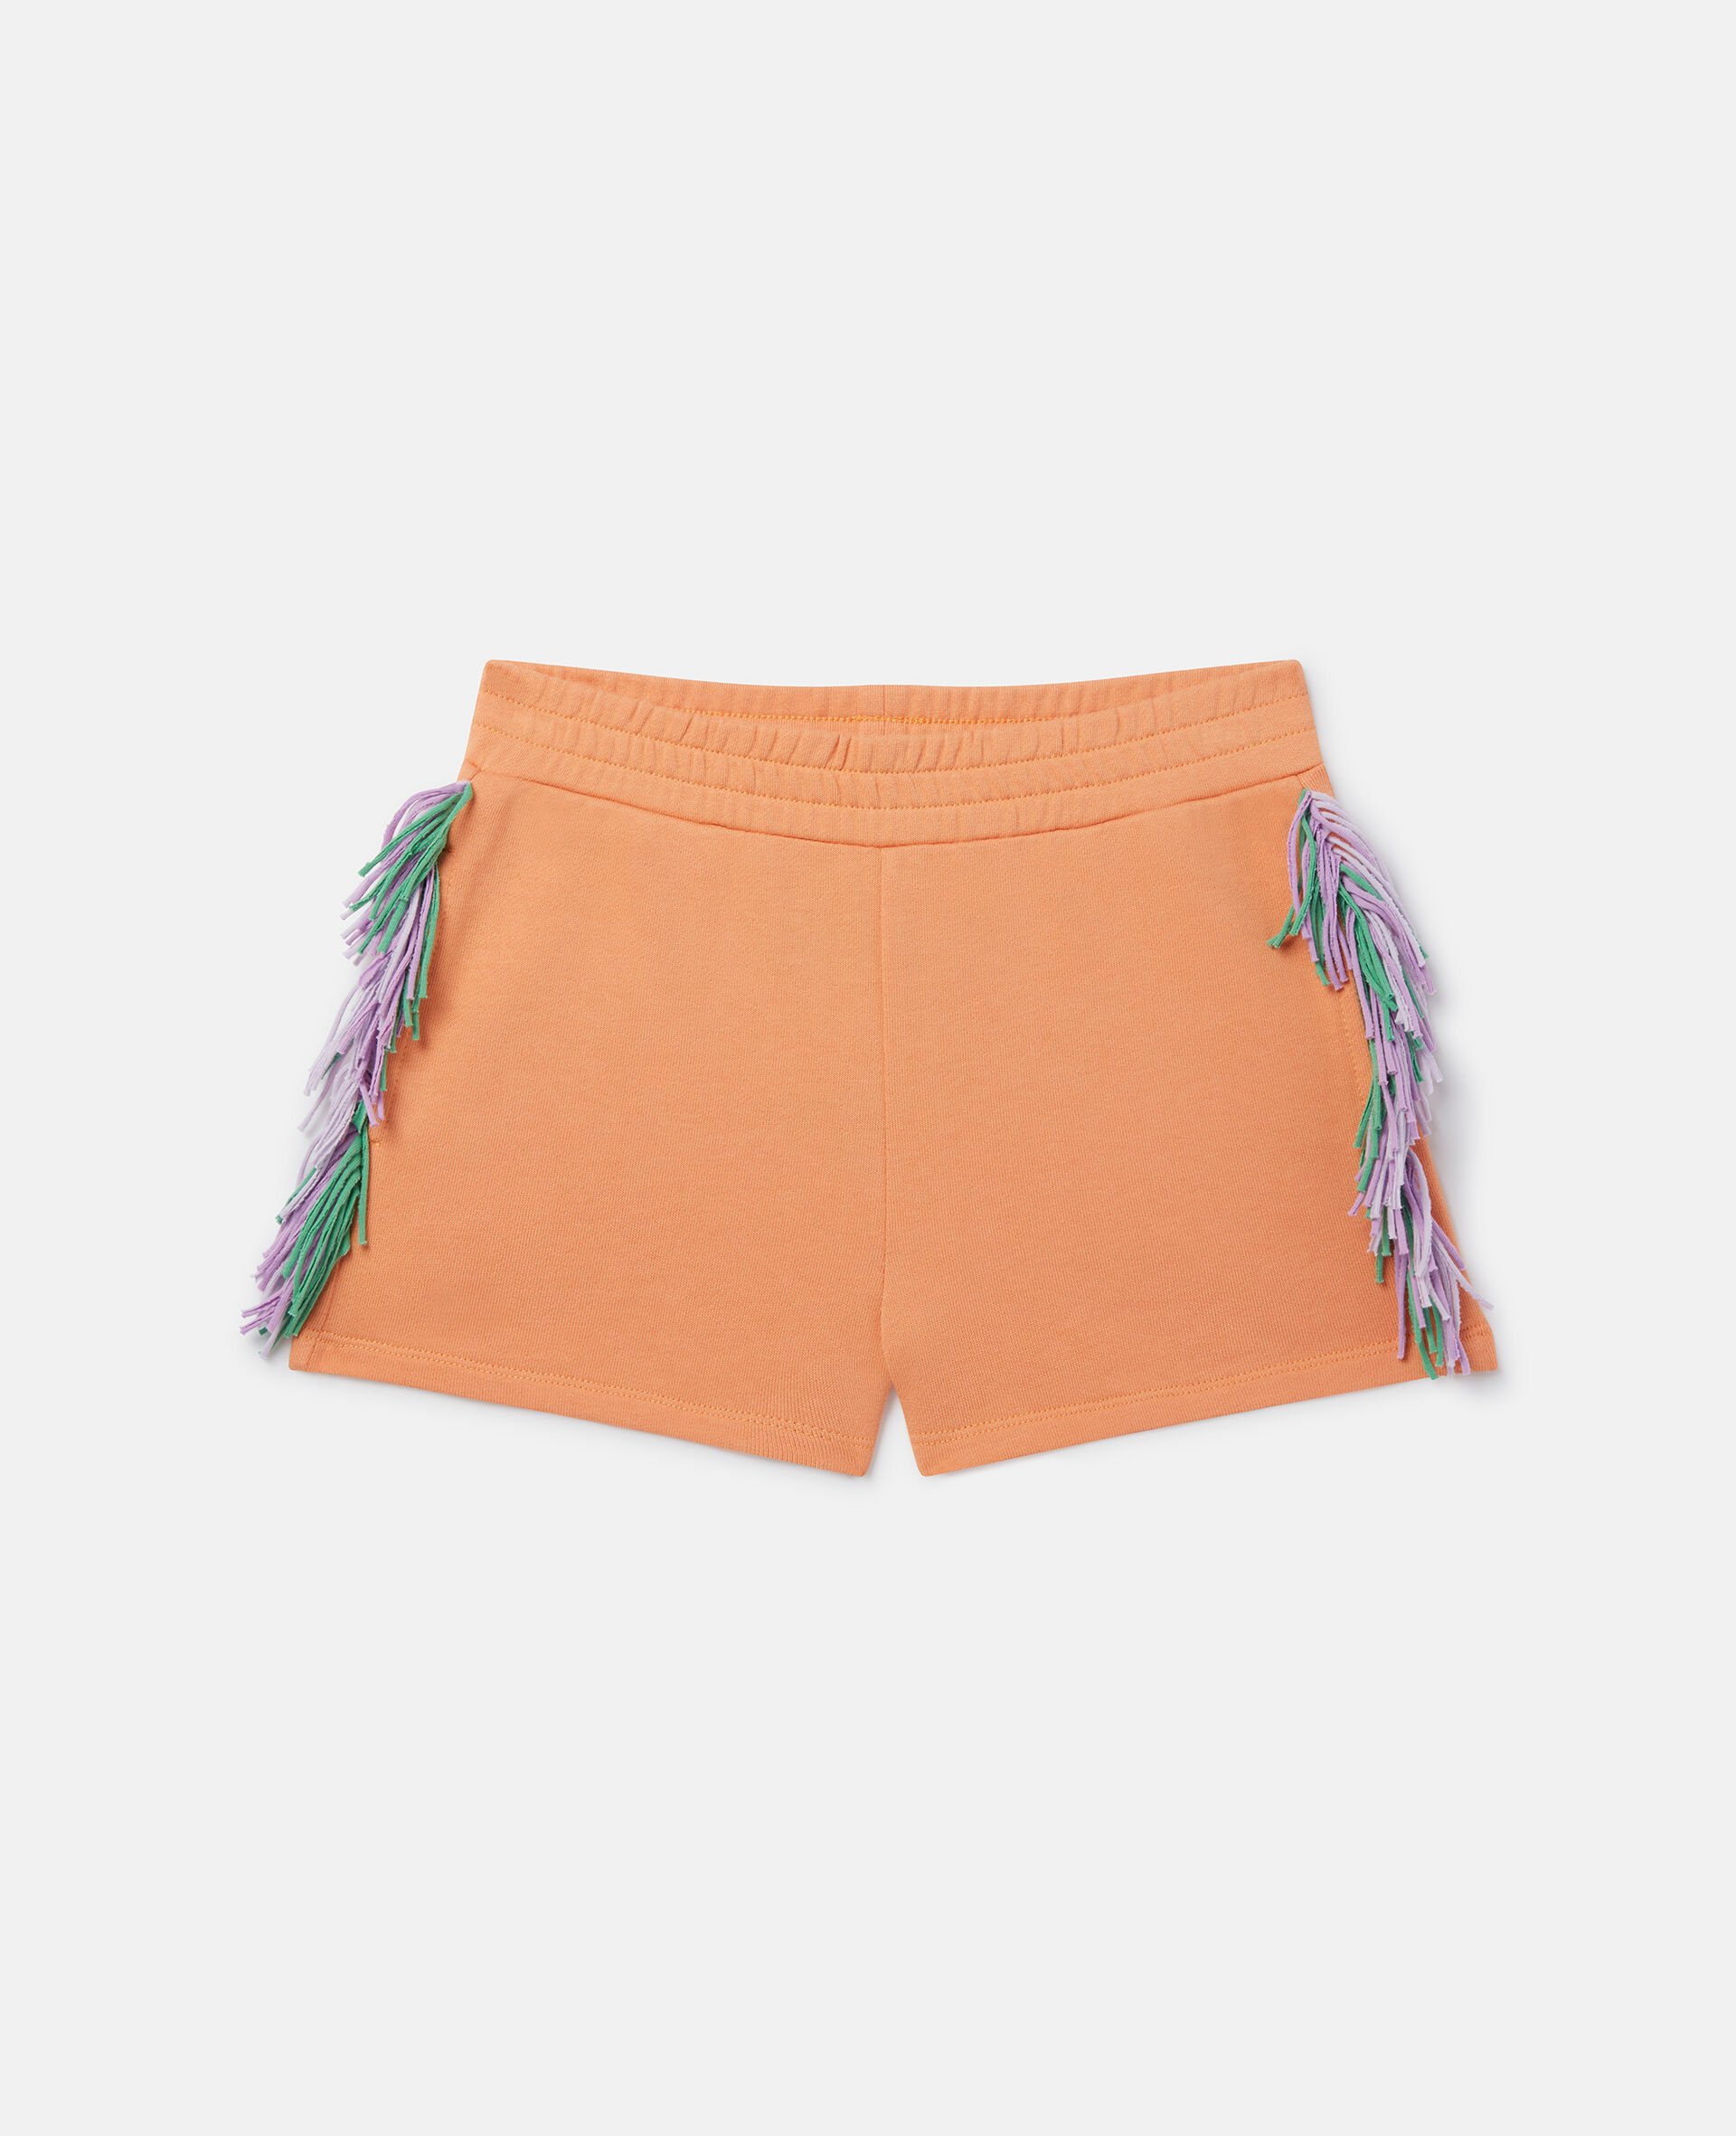 Fringed Shorts-Orange-large image number 0